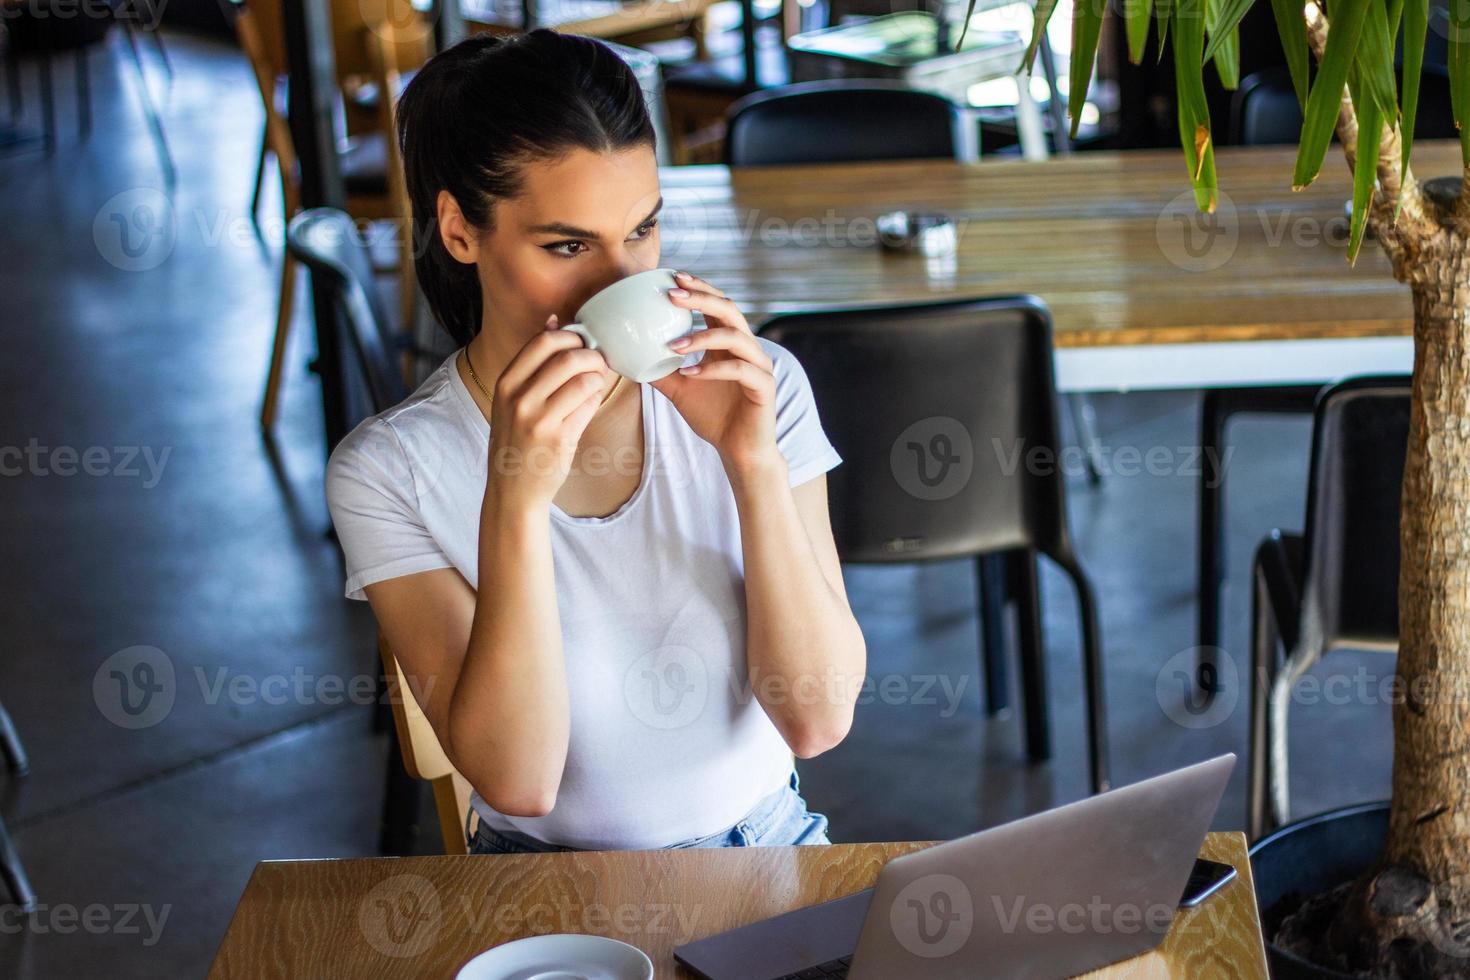 mulher sorridente bebendo café e usando seu telefone celular. fêmea satisfeita desfrutando de uma xícara de café. feche o retrato de uma linda garota bebendo café de uma caneca branca na cafeteria foto